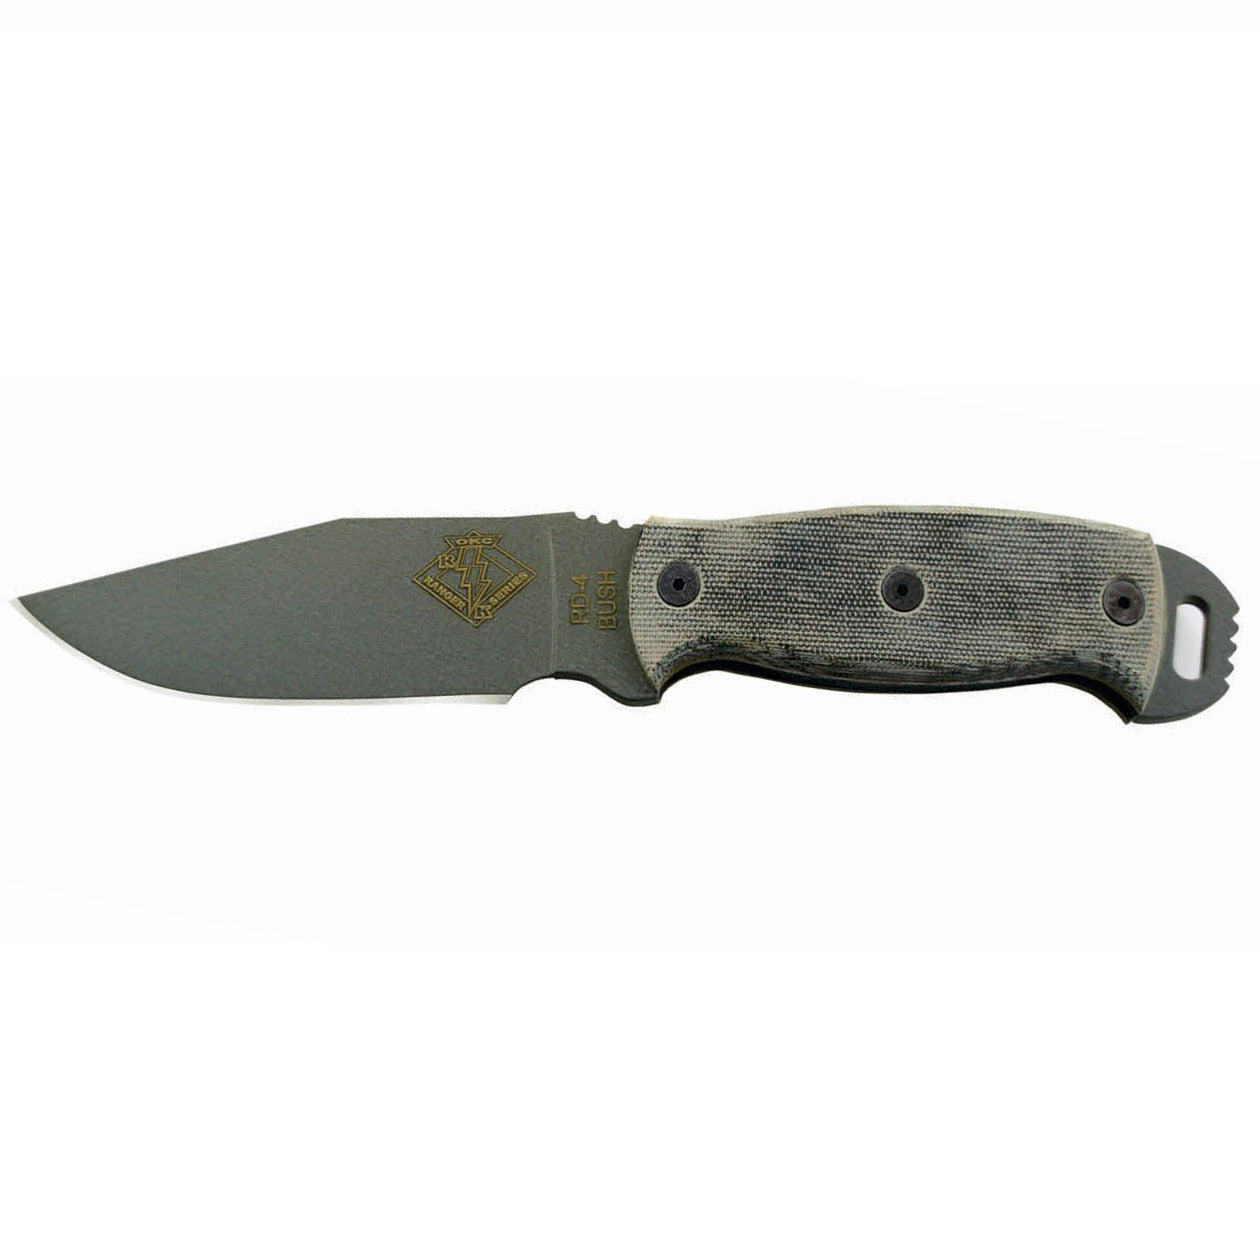 Ranger Bush Series, RBS-4 Knife